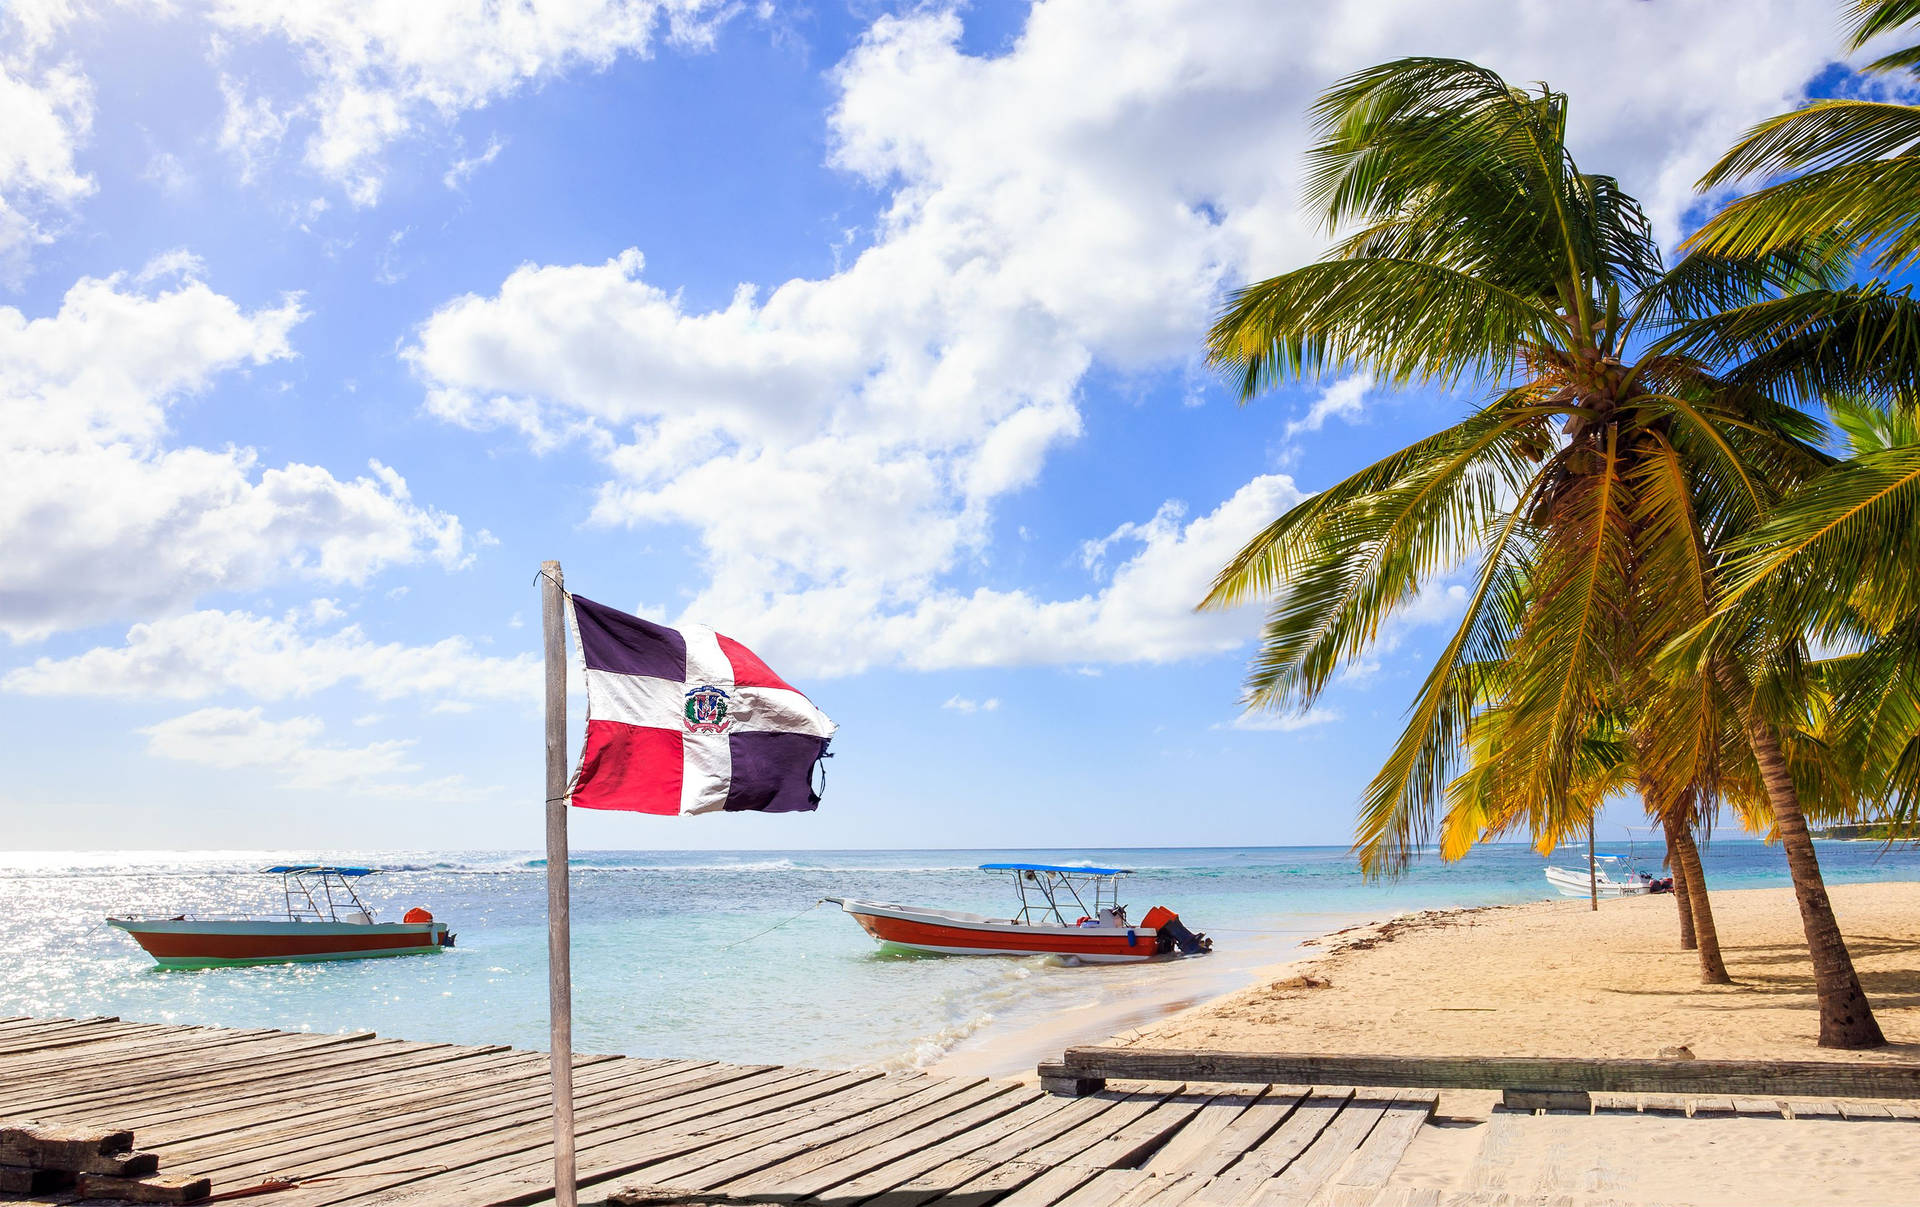 North America Dominican Republic Background